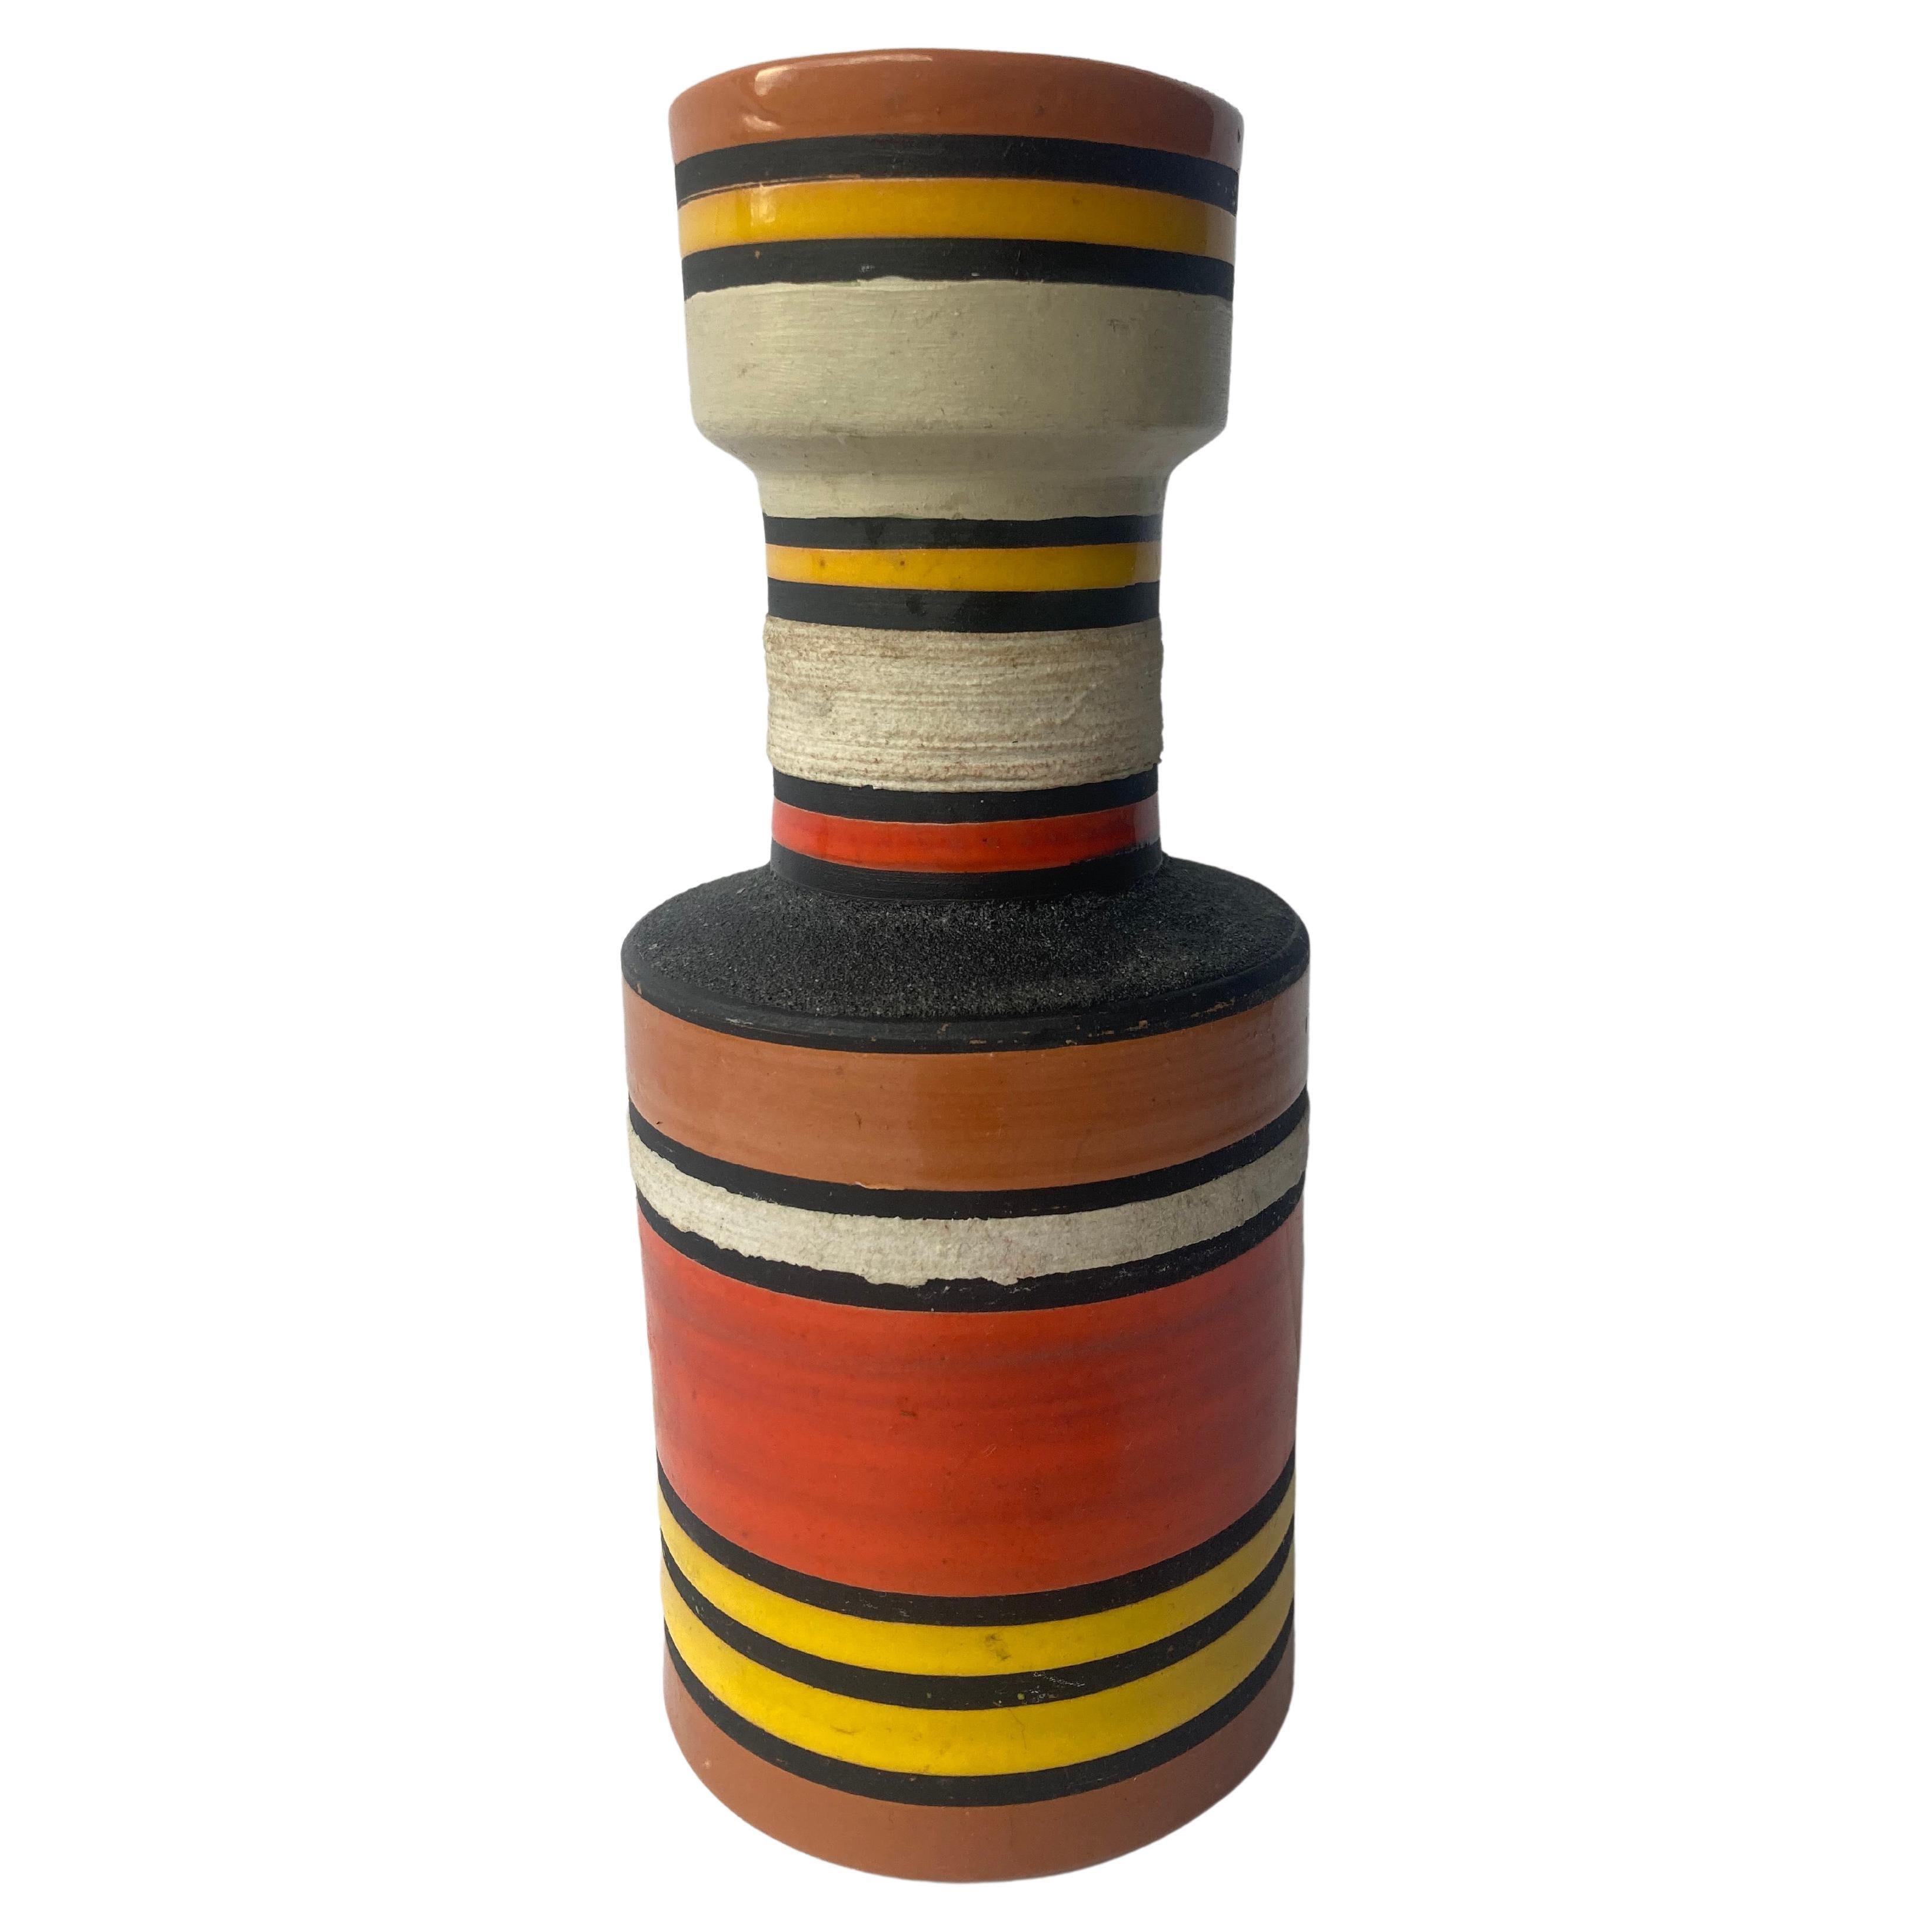 Aldo Londi for Bitossi, Raymor Cambogia Pottery/Ceramic Vase